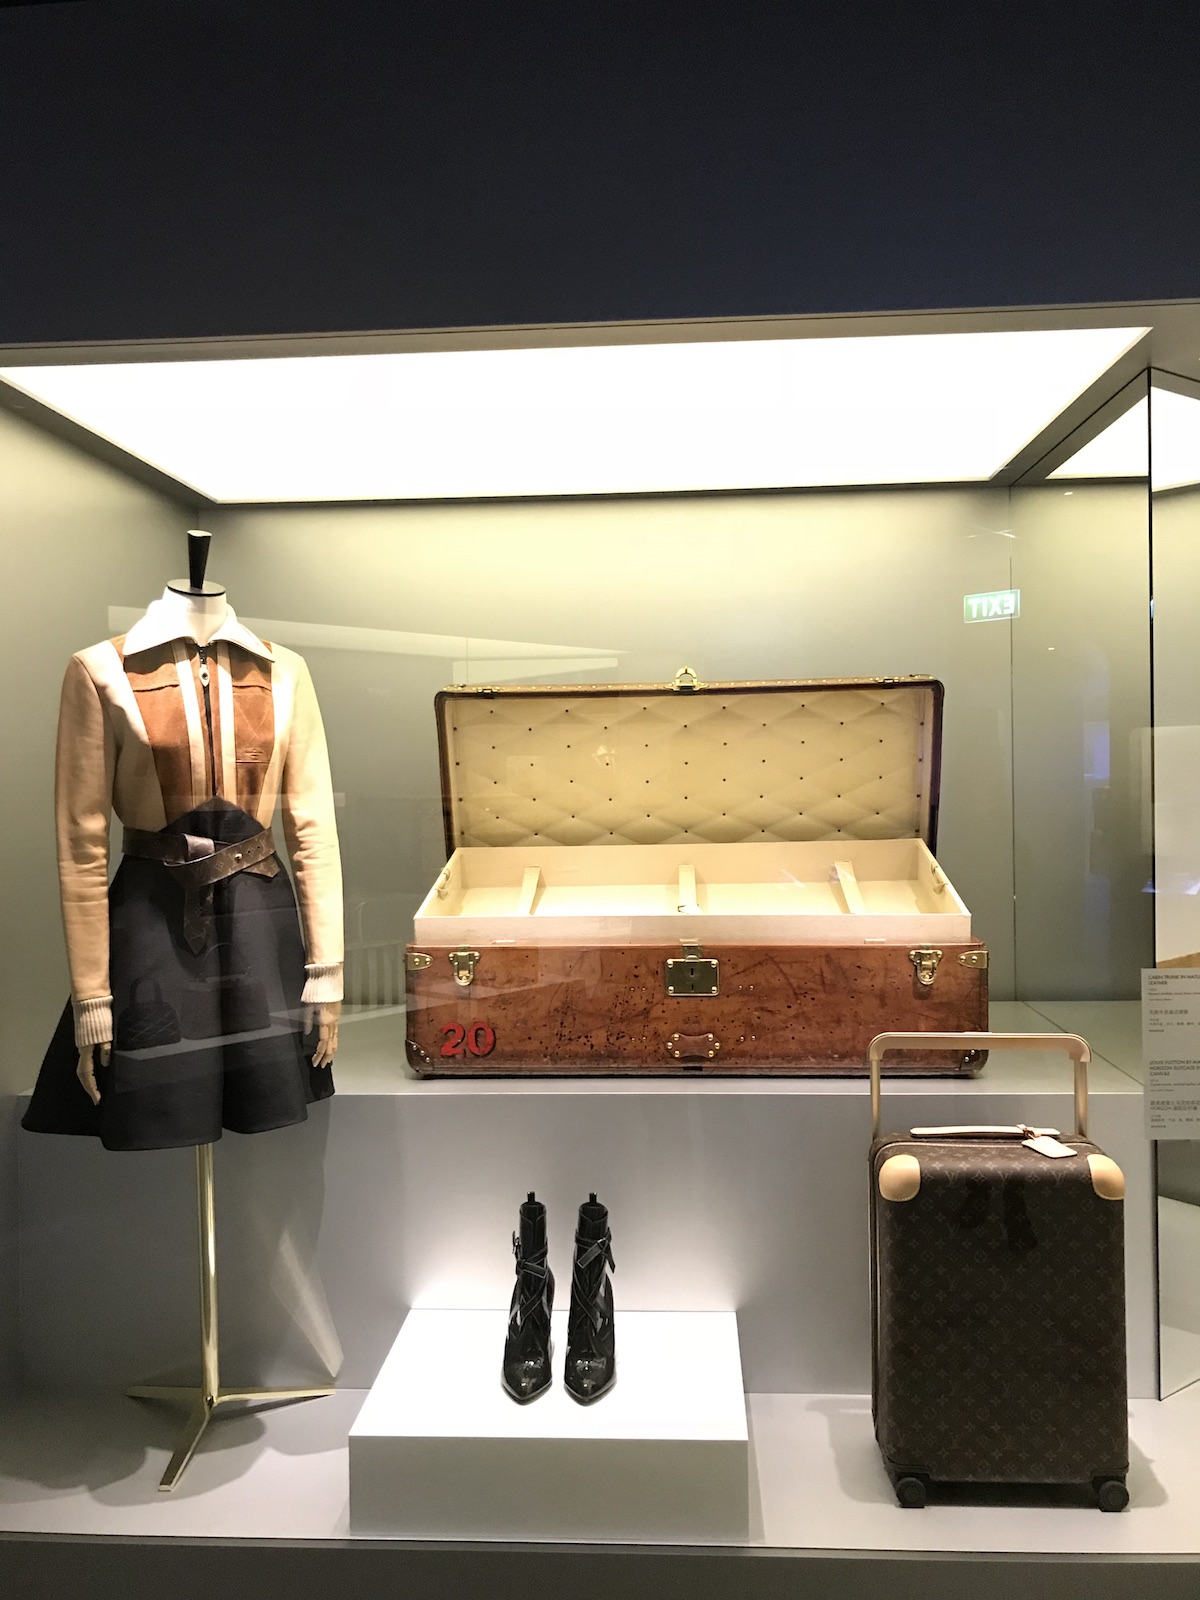 Louis Vuitton Time Capsule Exhibit, Singapore - BagAddicts Anonymous